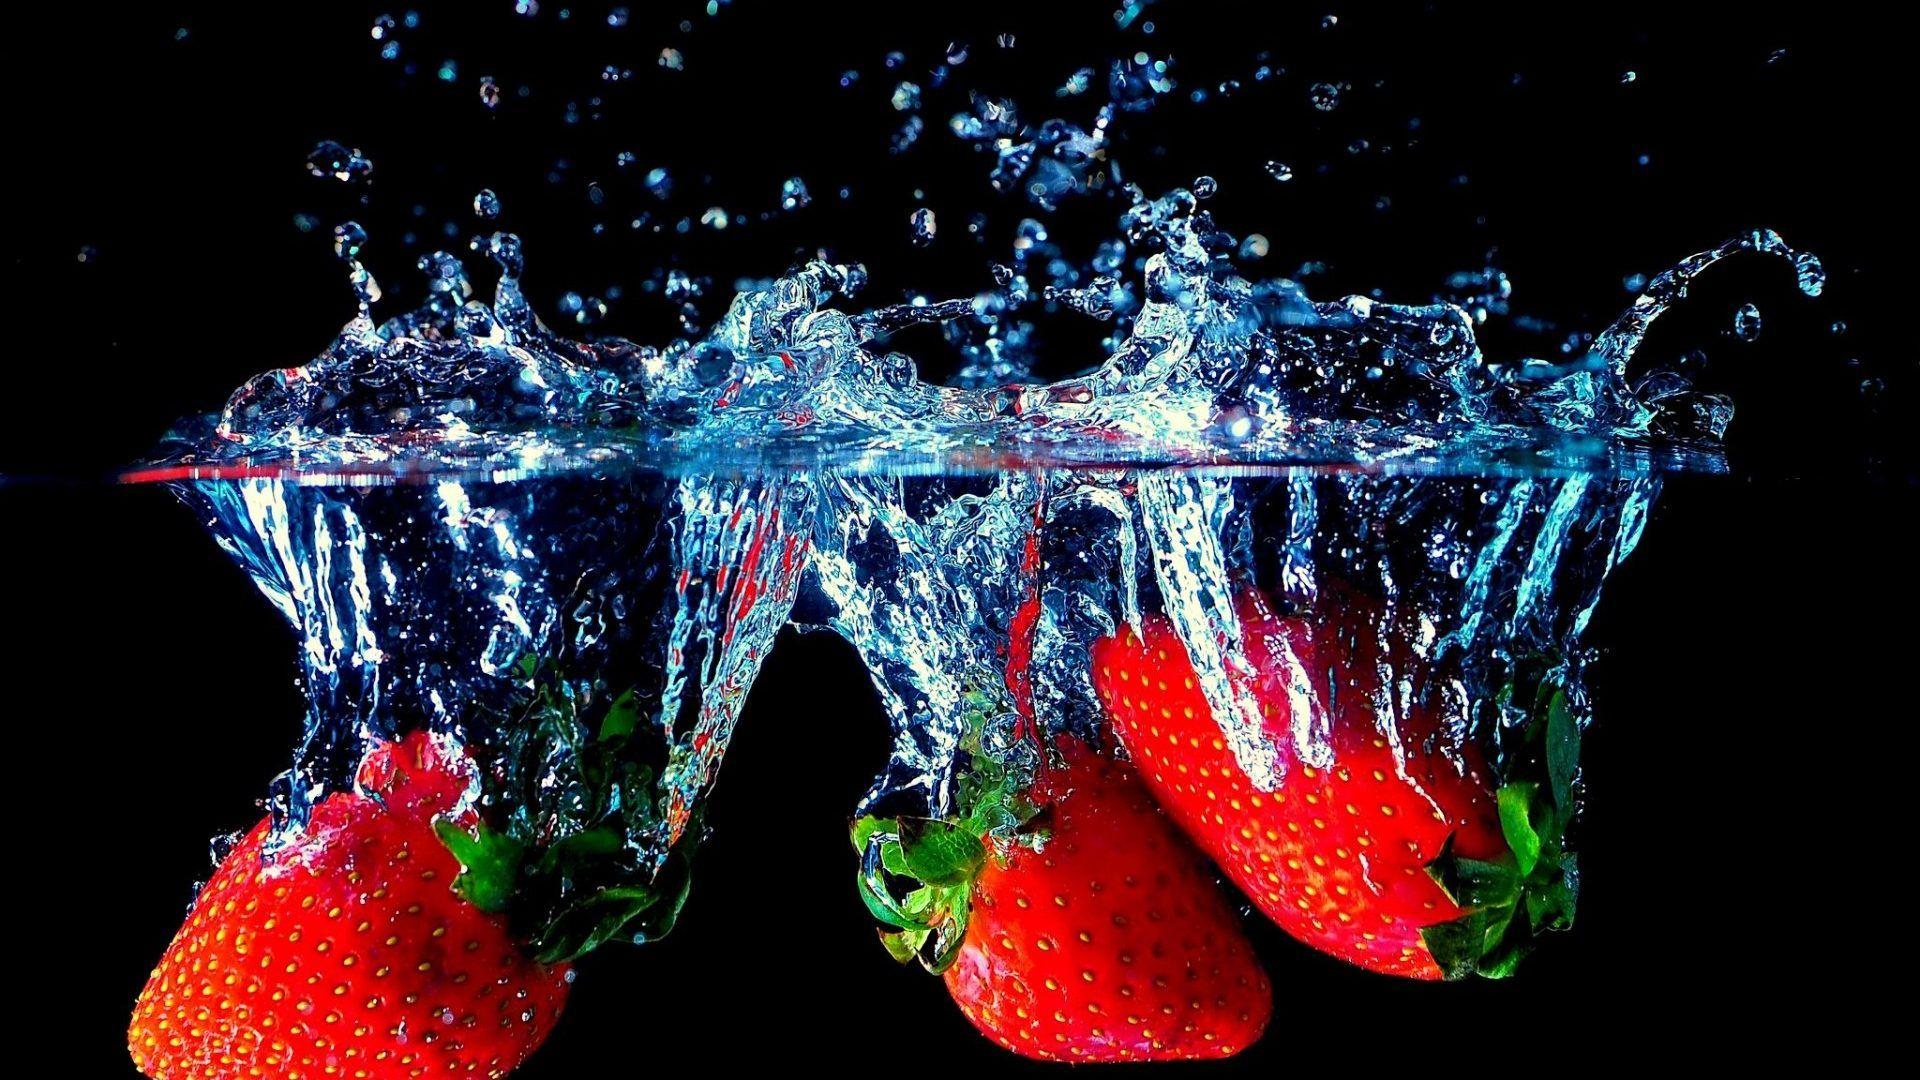 Strawberry wallpaper for desktop